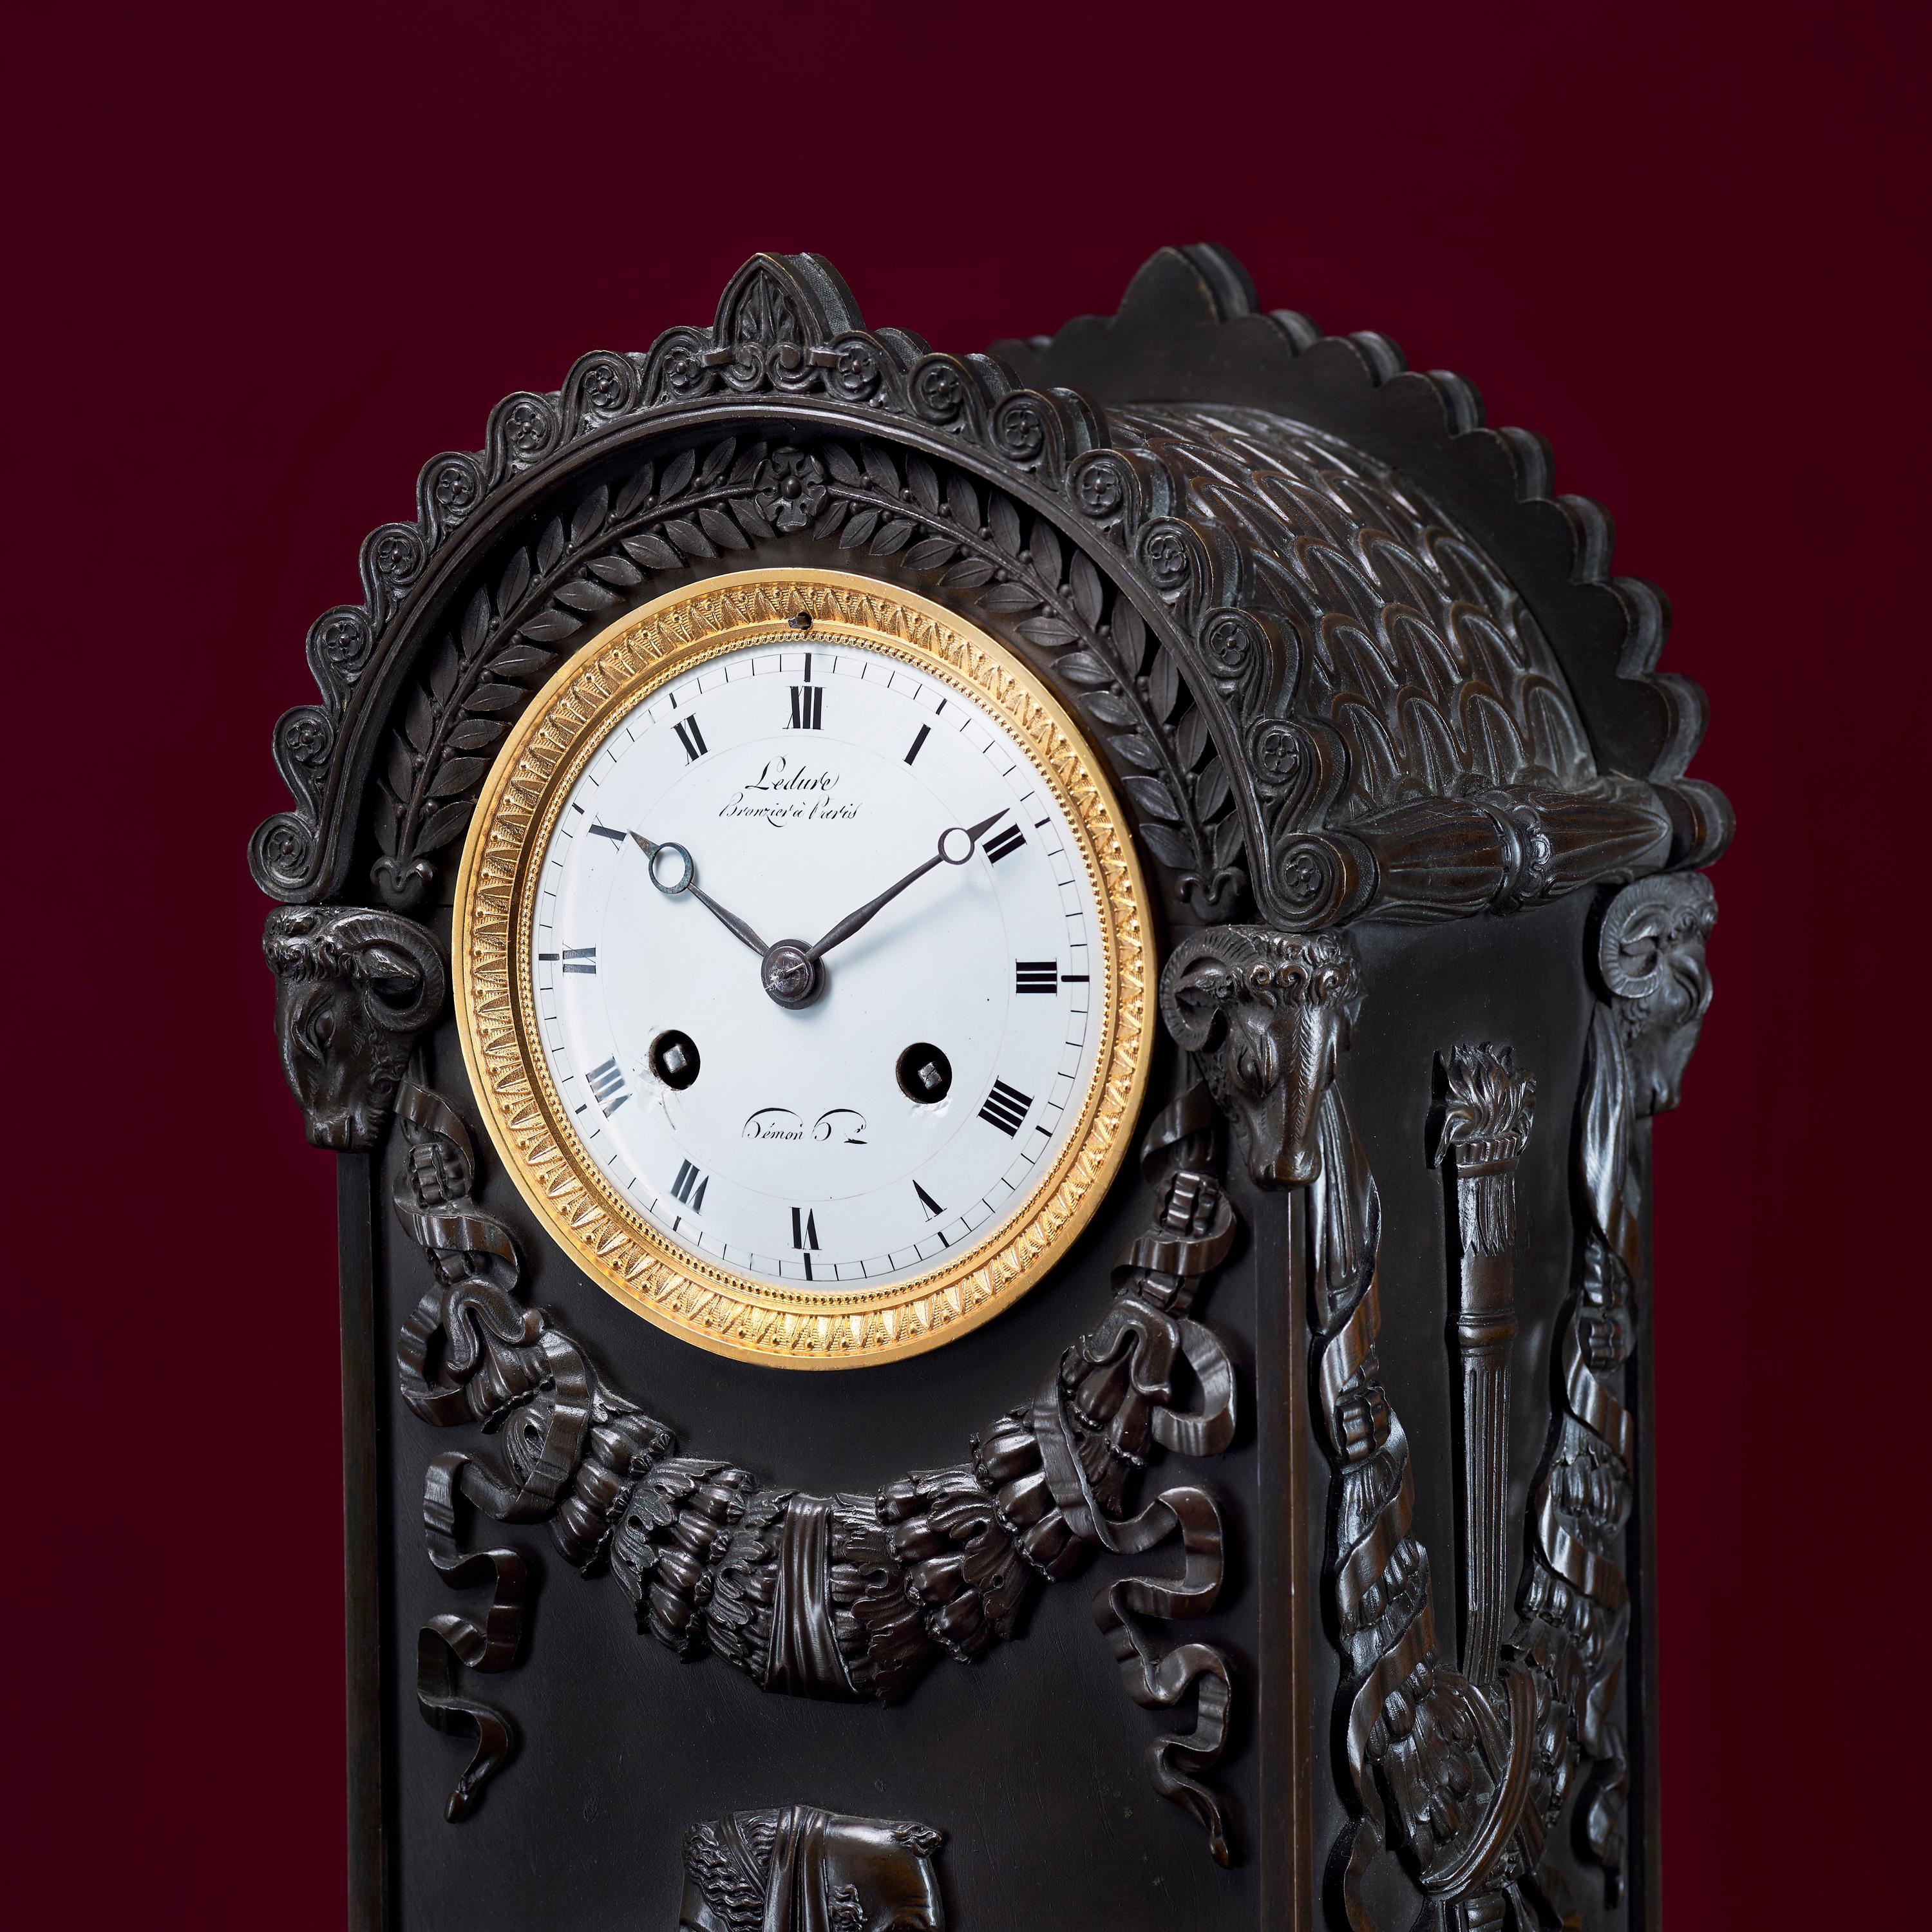 Sehr schöne Kaminsimsuhr aus patinierter Bronze aus dem frühen 19. Jahrhundert. Sie ist von einem der besten Pariser Bronzegießer, Pierre Victor Ledure, und seinem Mitarbeiter, dem Uhrmacher Claude Hémon, signiert. Das Gehäuse von klassischer Form